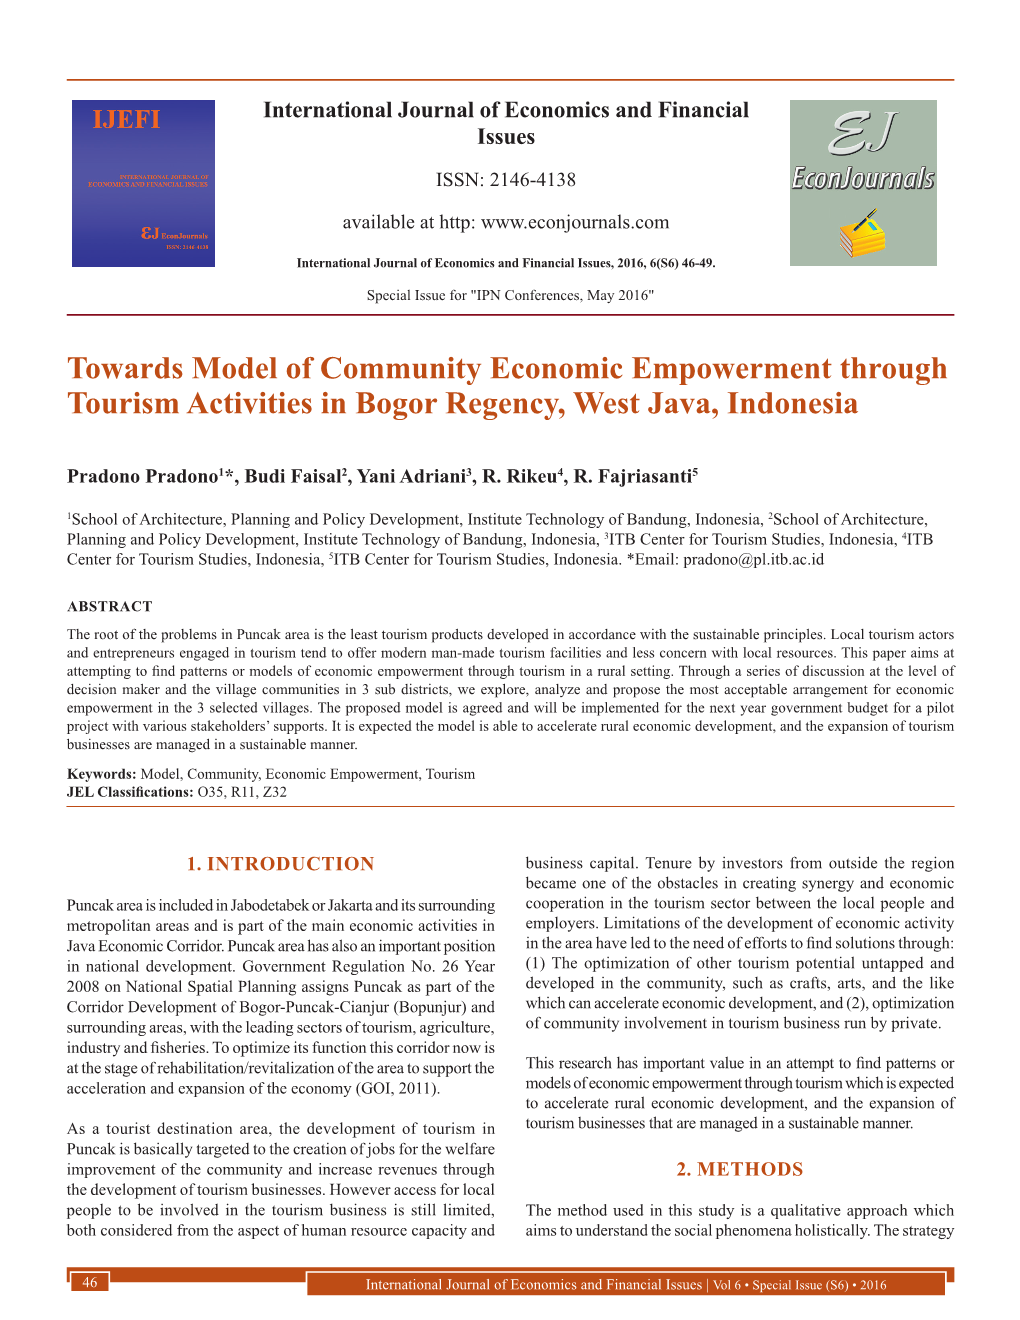 Towards Model of Community Economic Empowerment Through Tourism Activities in Bogor Regency, West Java, Indonesia